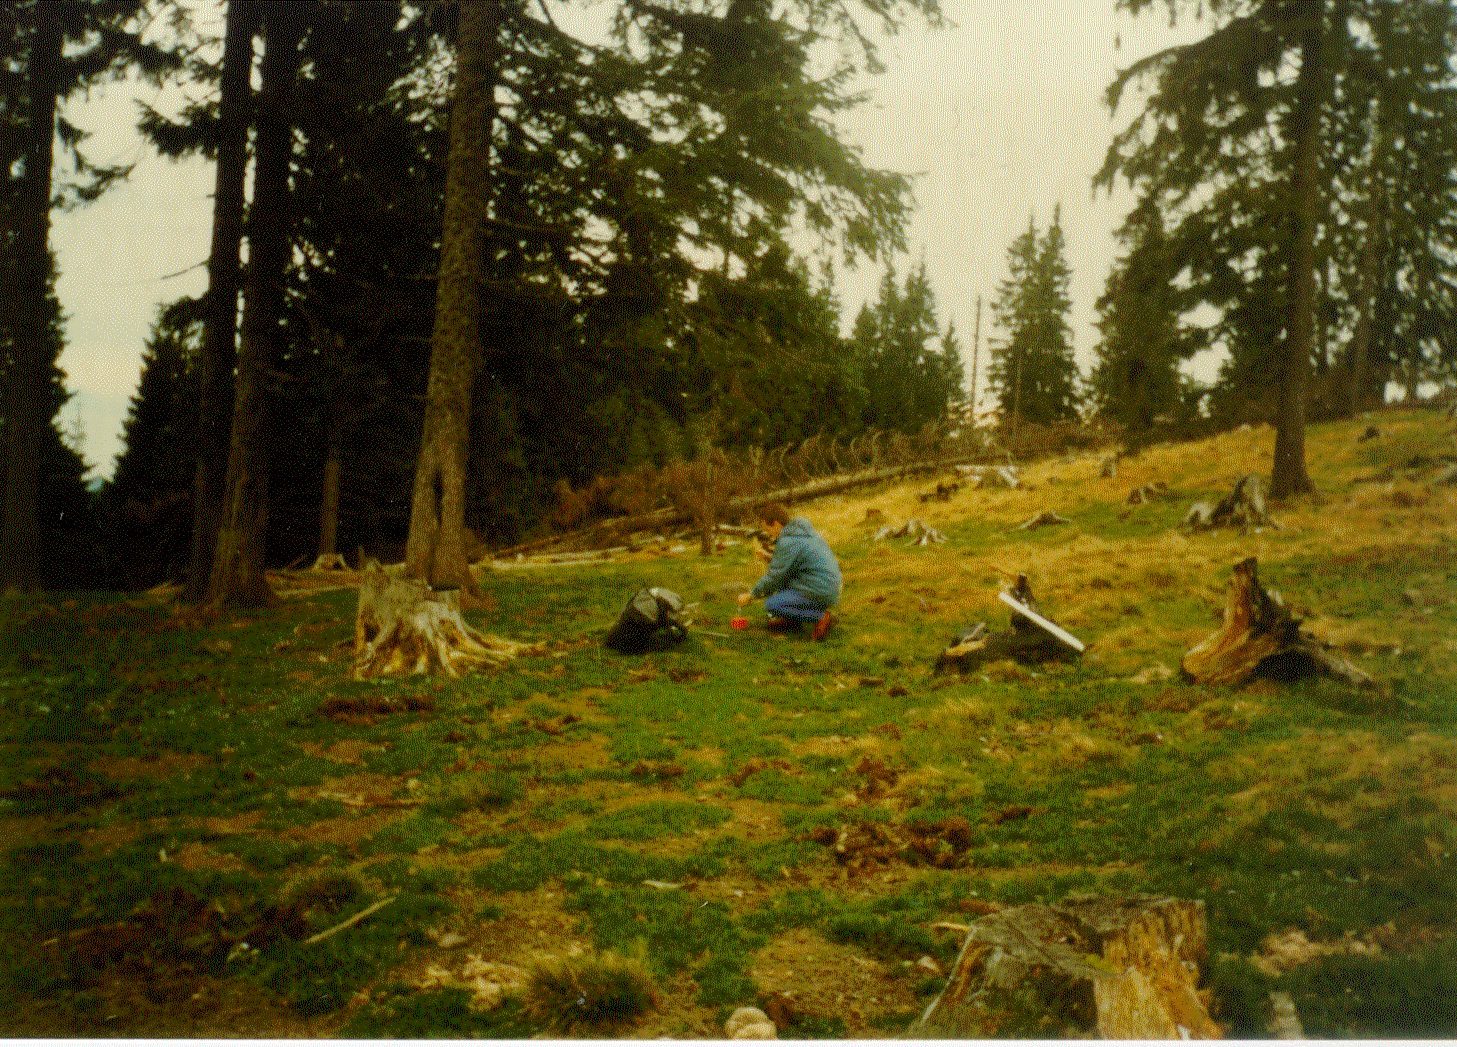 Delimitare cadastrală comuna Răstoliţa, judeţul Mureş, 1998